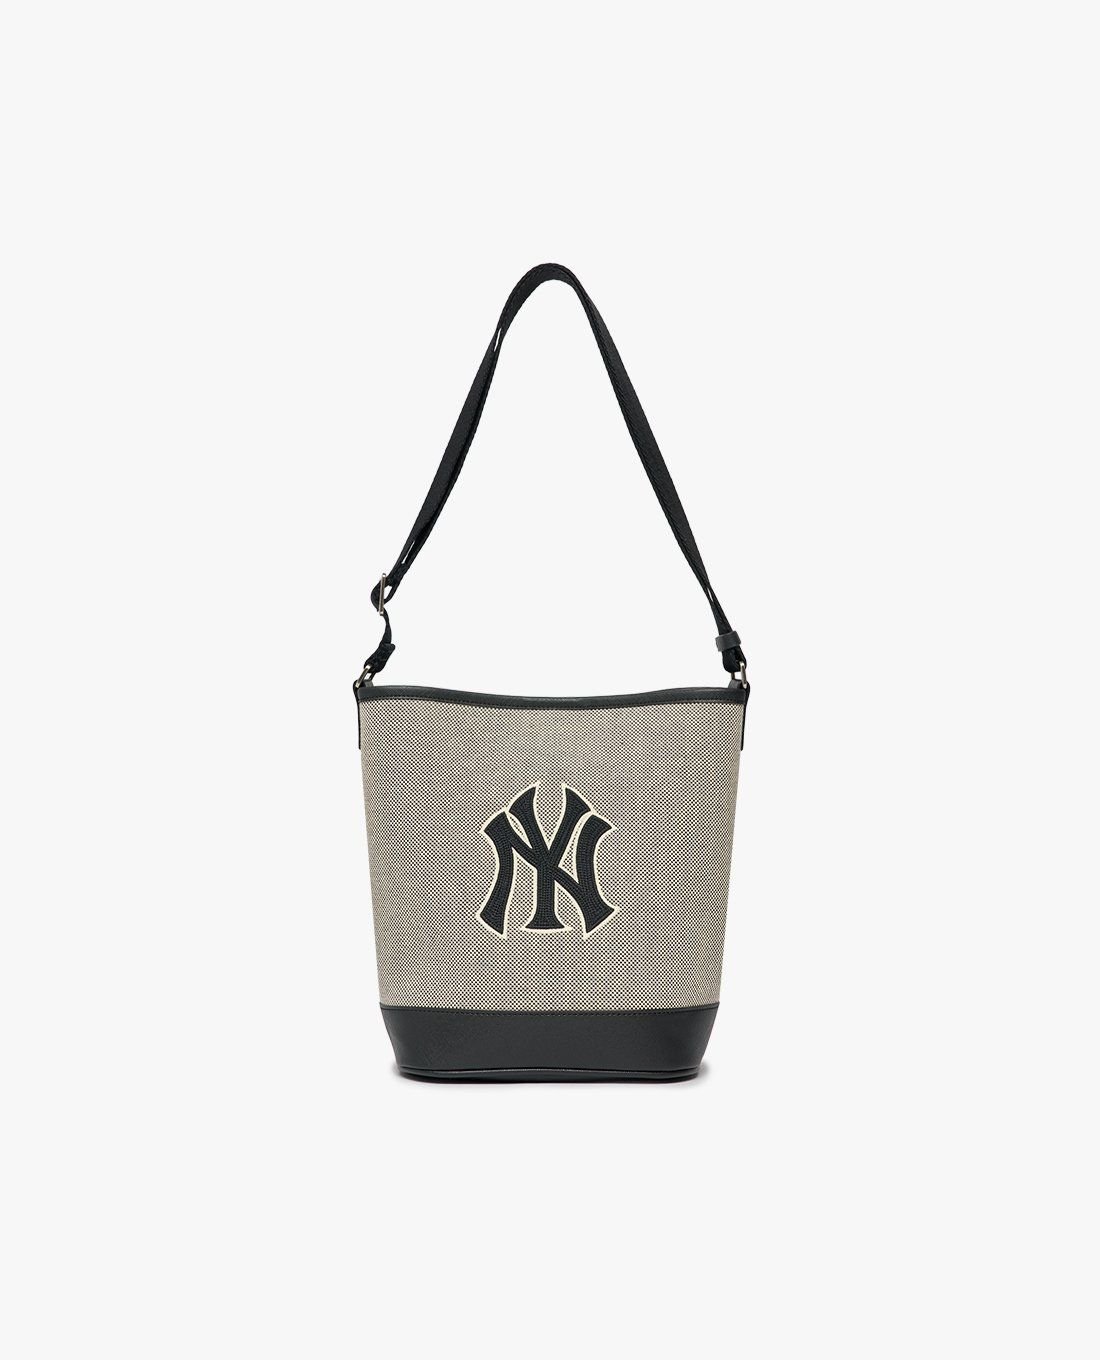 Túi xách MLB chính hãng cao cấp bền đẹp Giá tốt